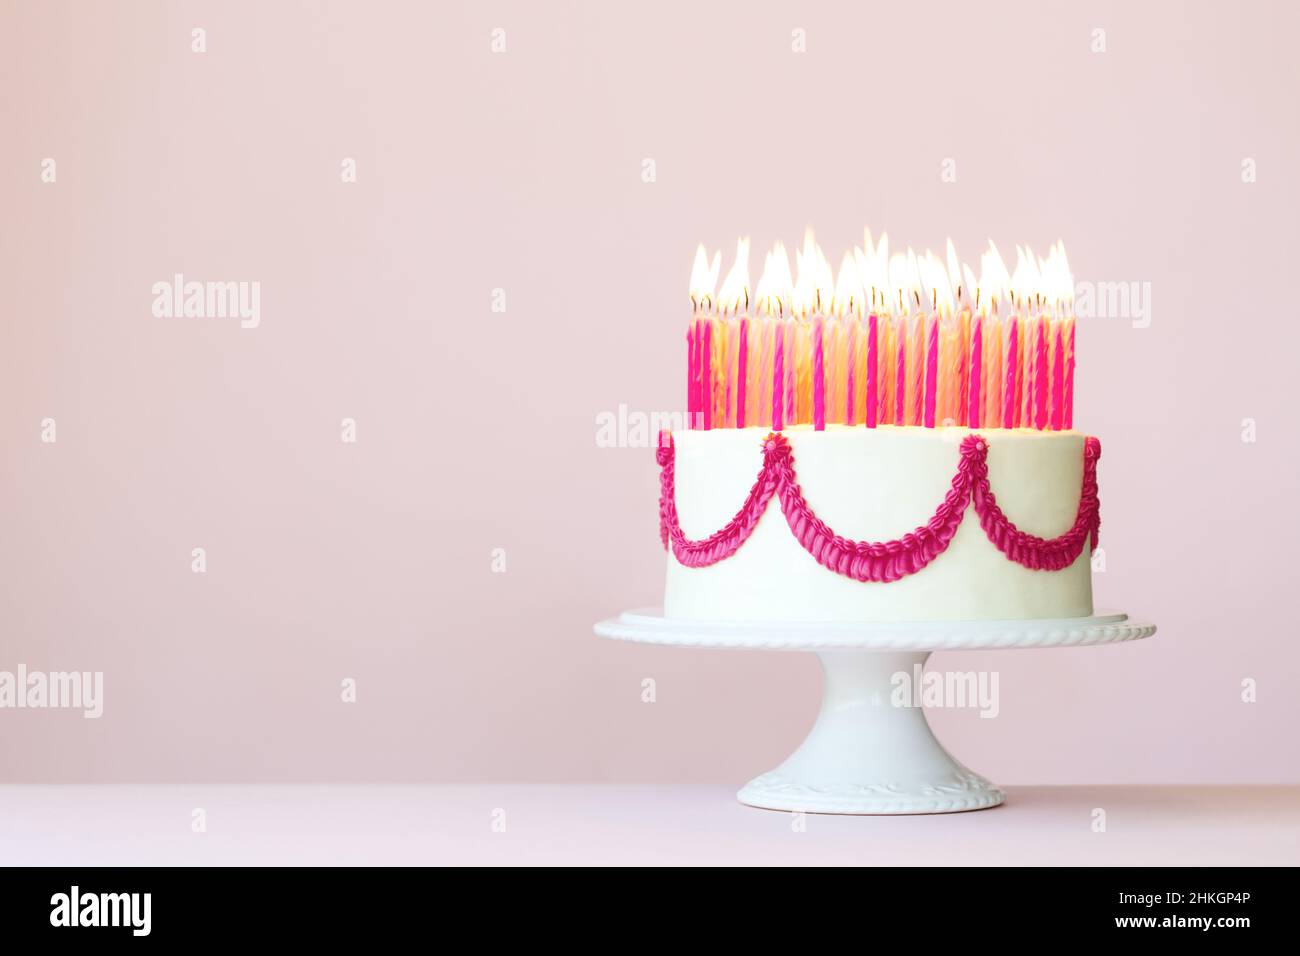 Torta di compleanno con un sacco di candele di compleanno rosa su sfondo rosa Foto Stock